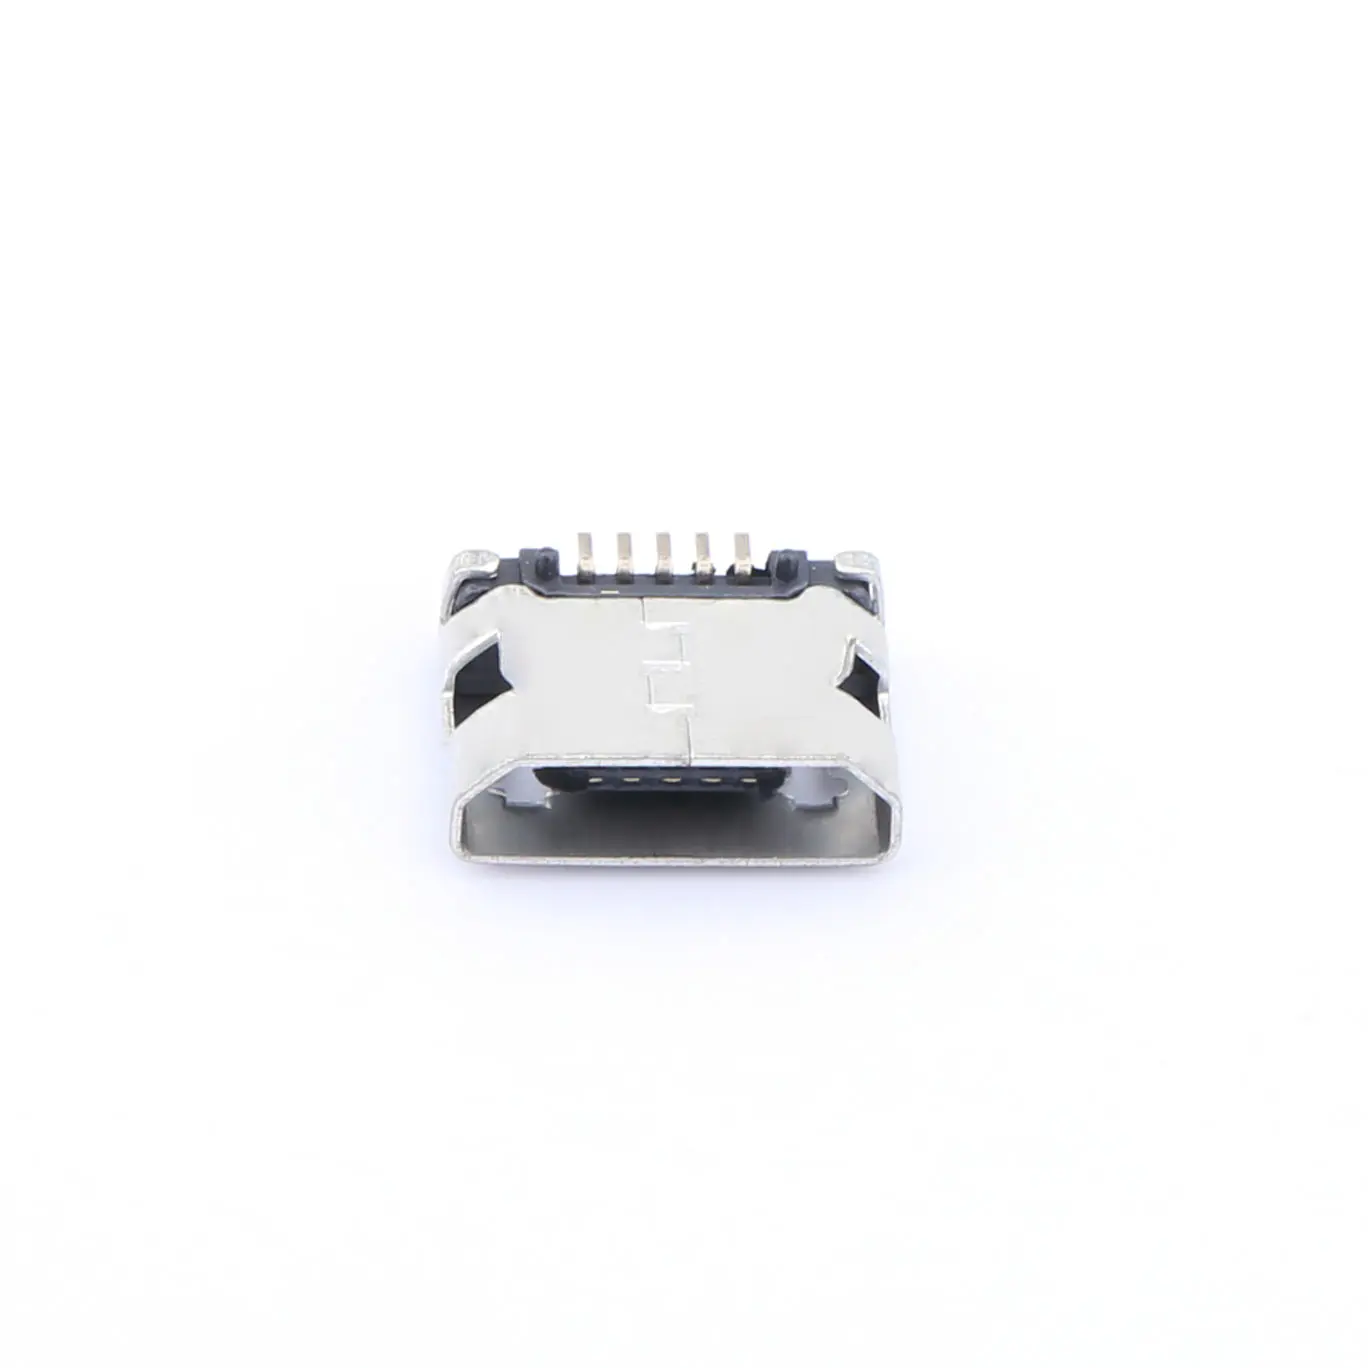 Connecteur Usb Mini Micro B femelle à 5 broches pour charger la prise de Port d'interface 1.0A SMT USB2.0 connecteur micro B USB type B